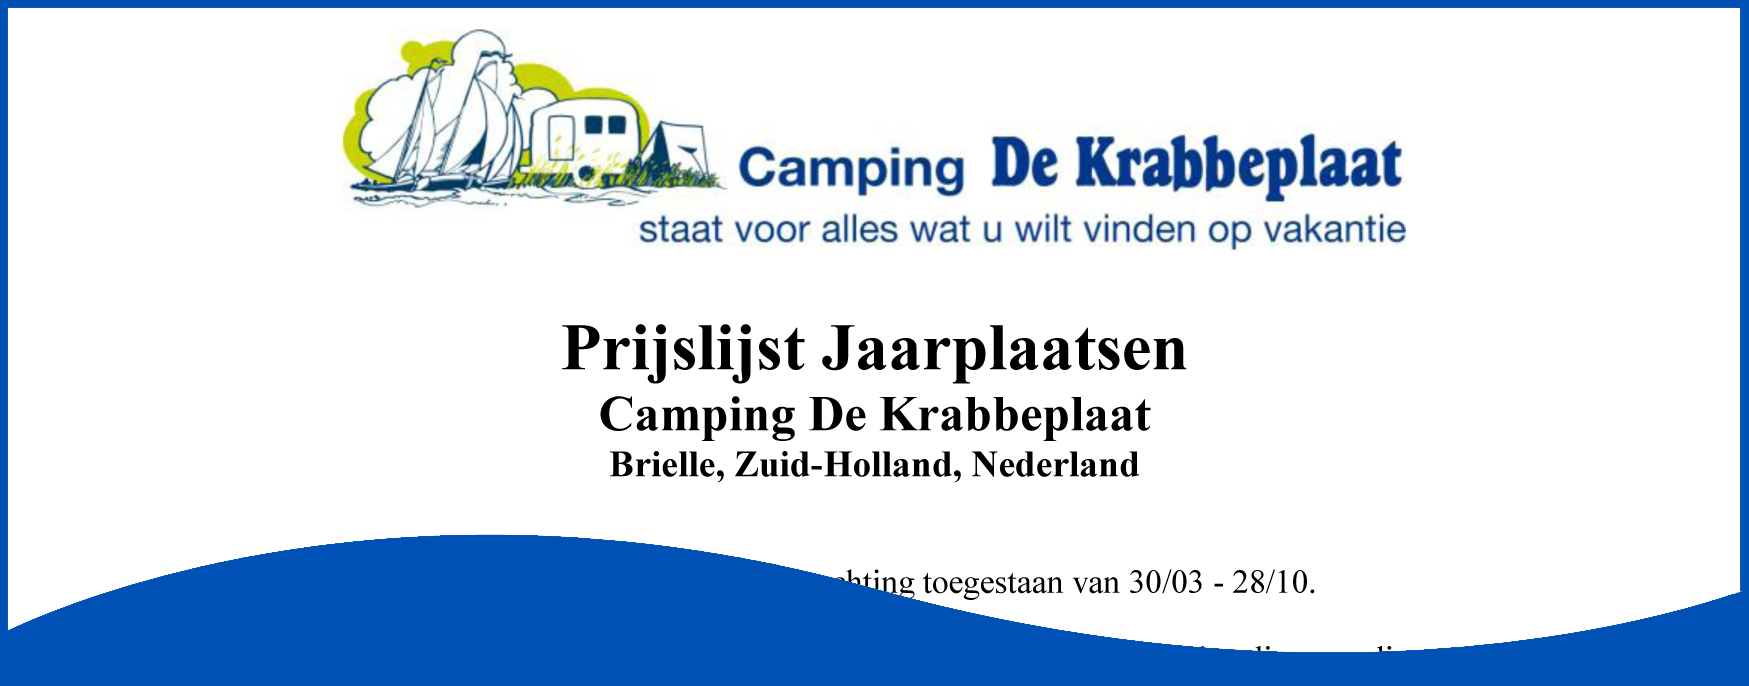 Prijslijst Jaarplaatsen Camping De Krabbeplaat